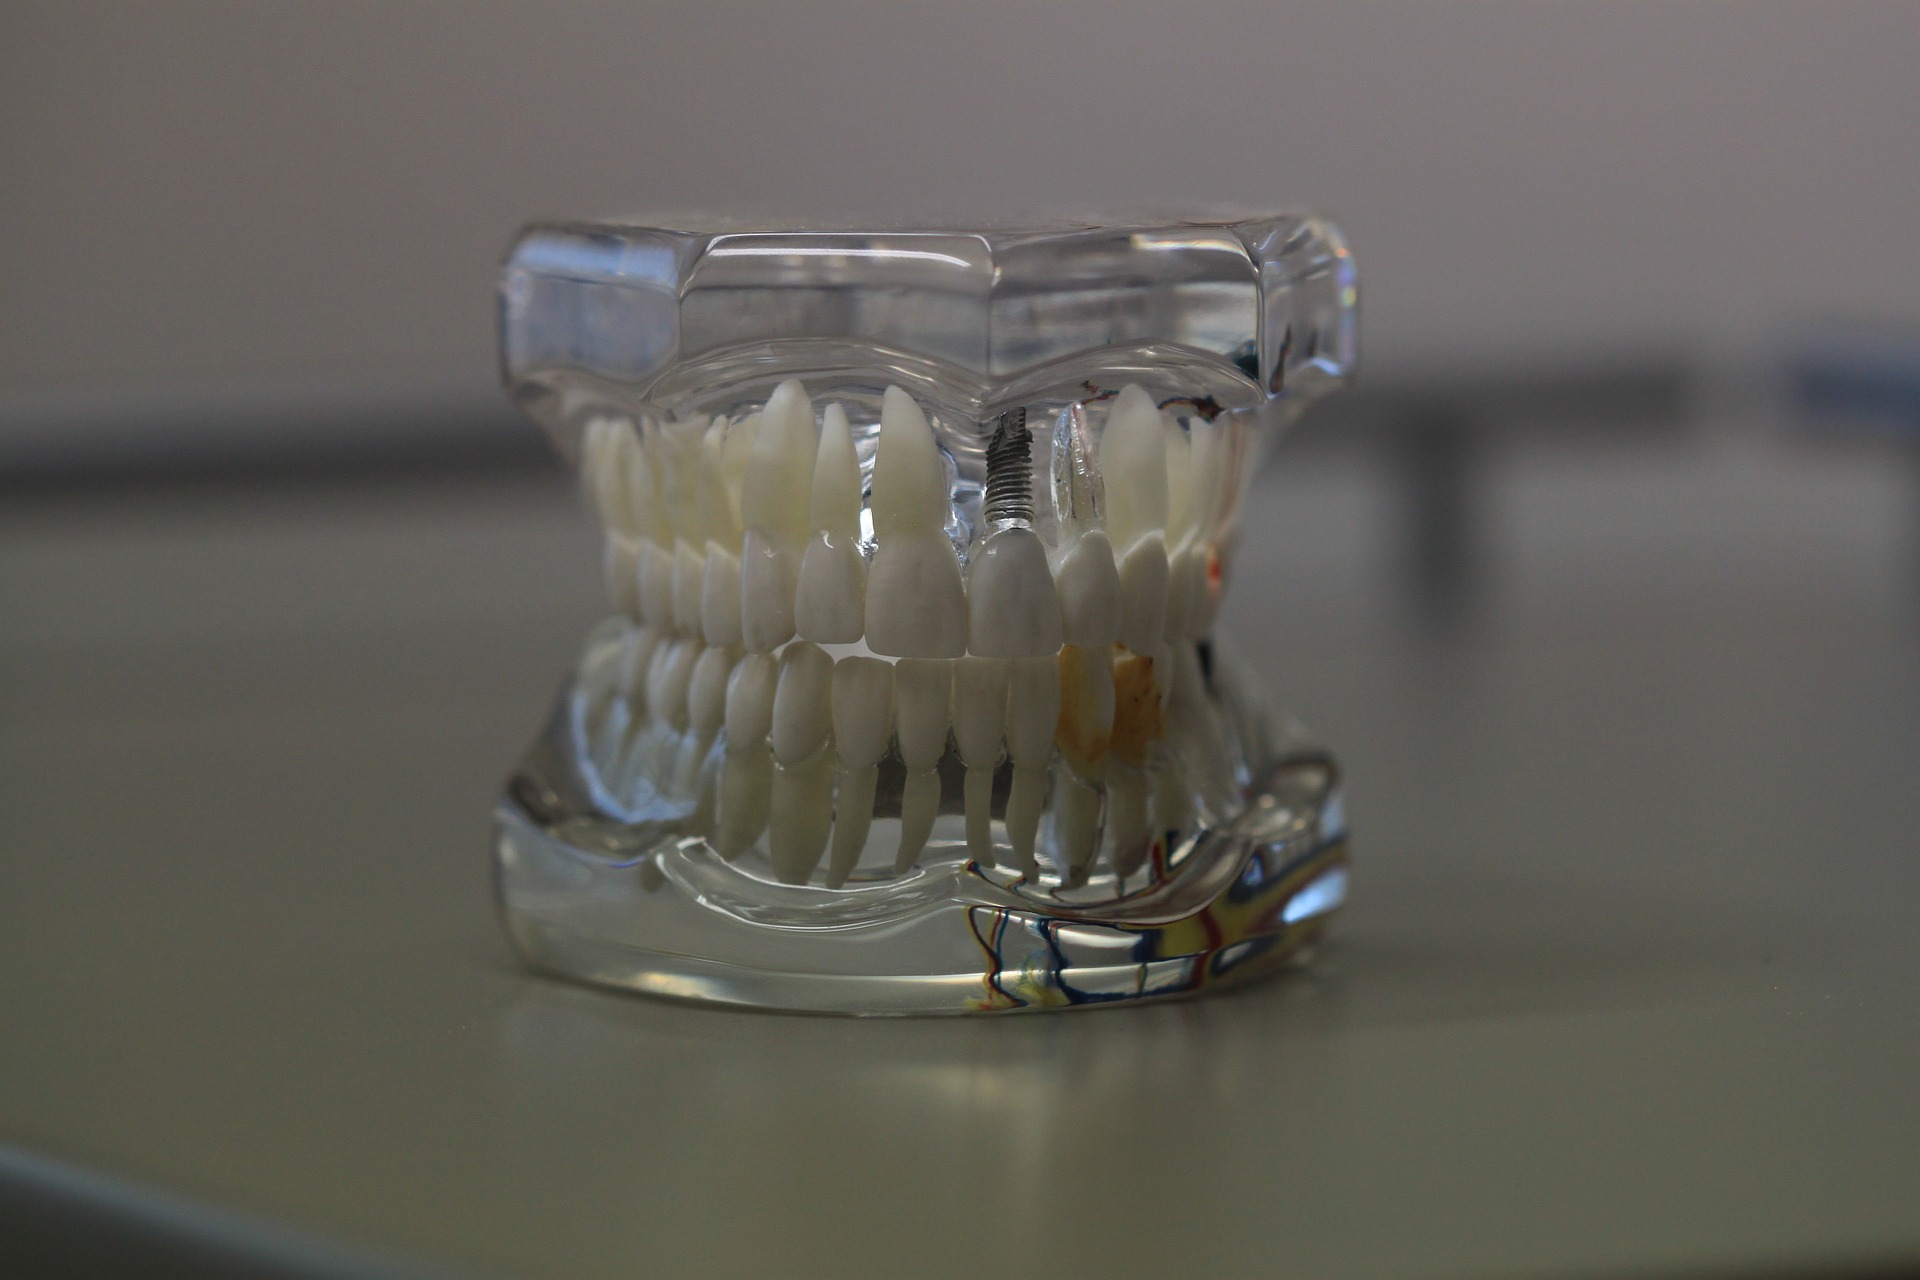 Aprende todos los trucos para cuidar tu prótesis dental